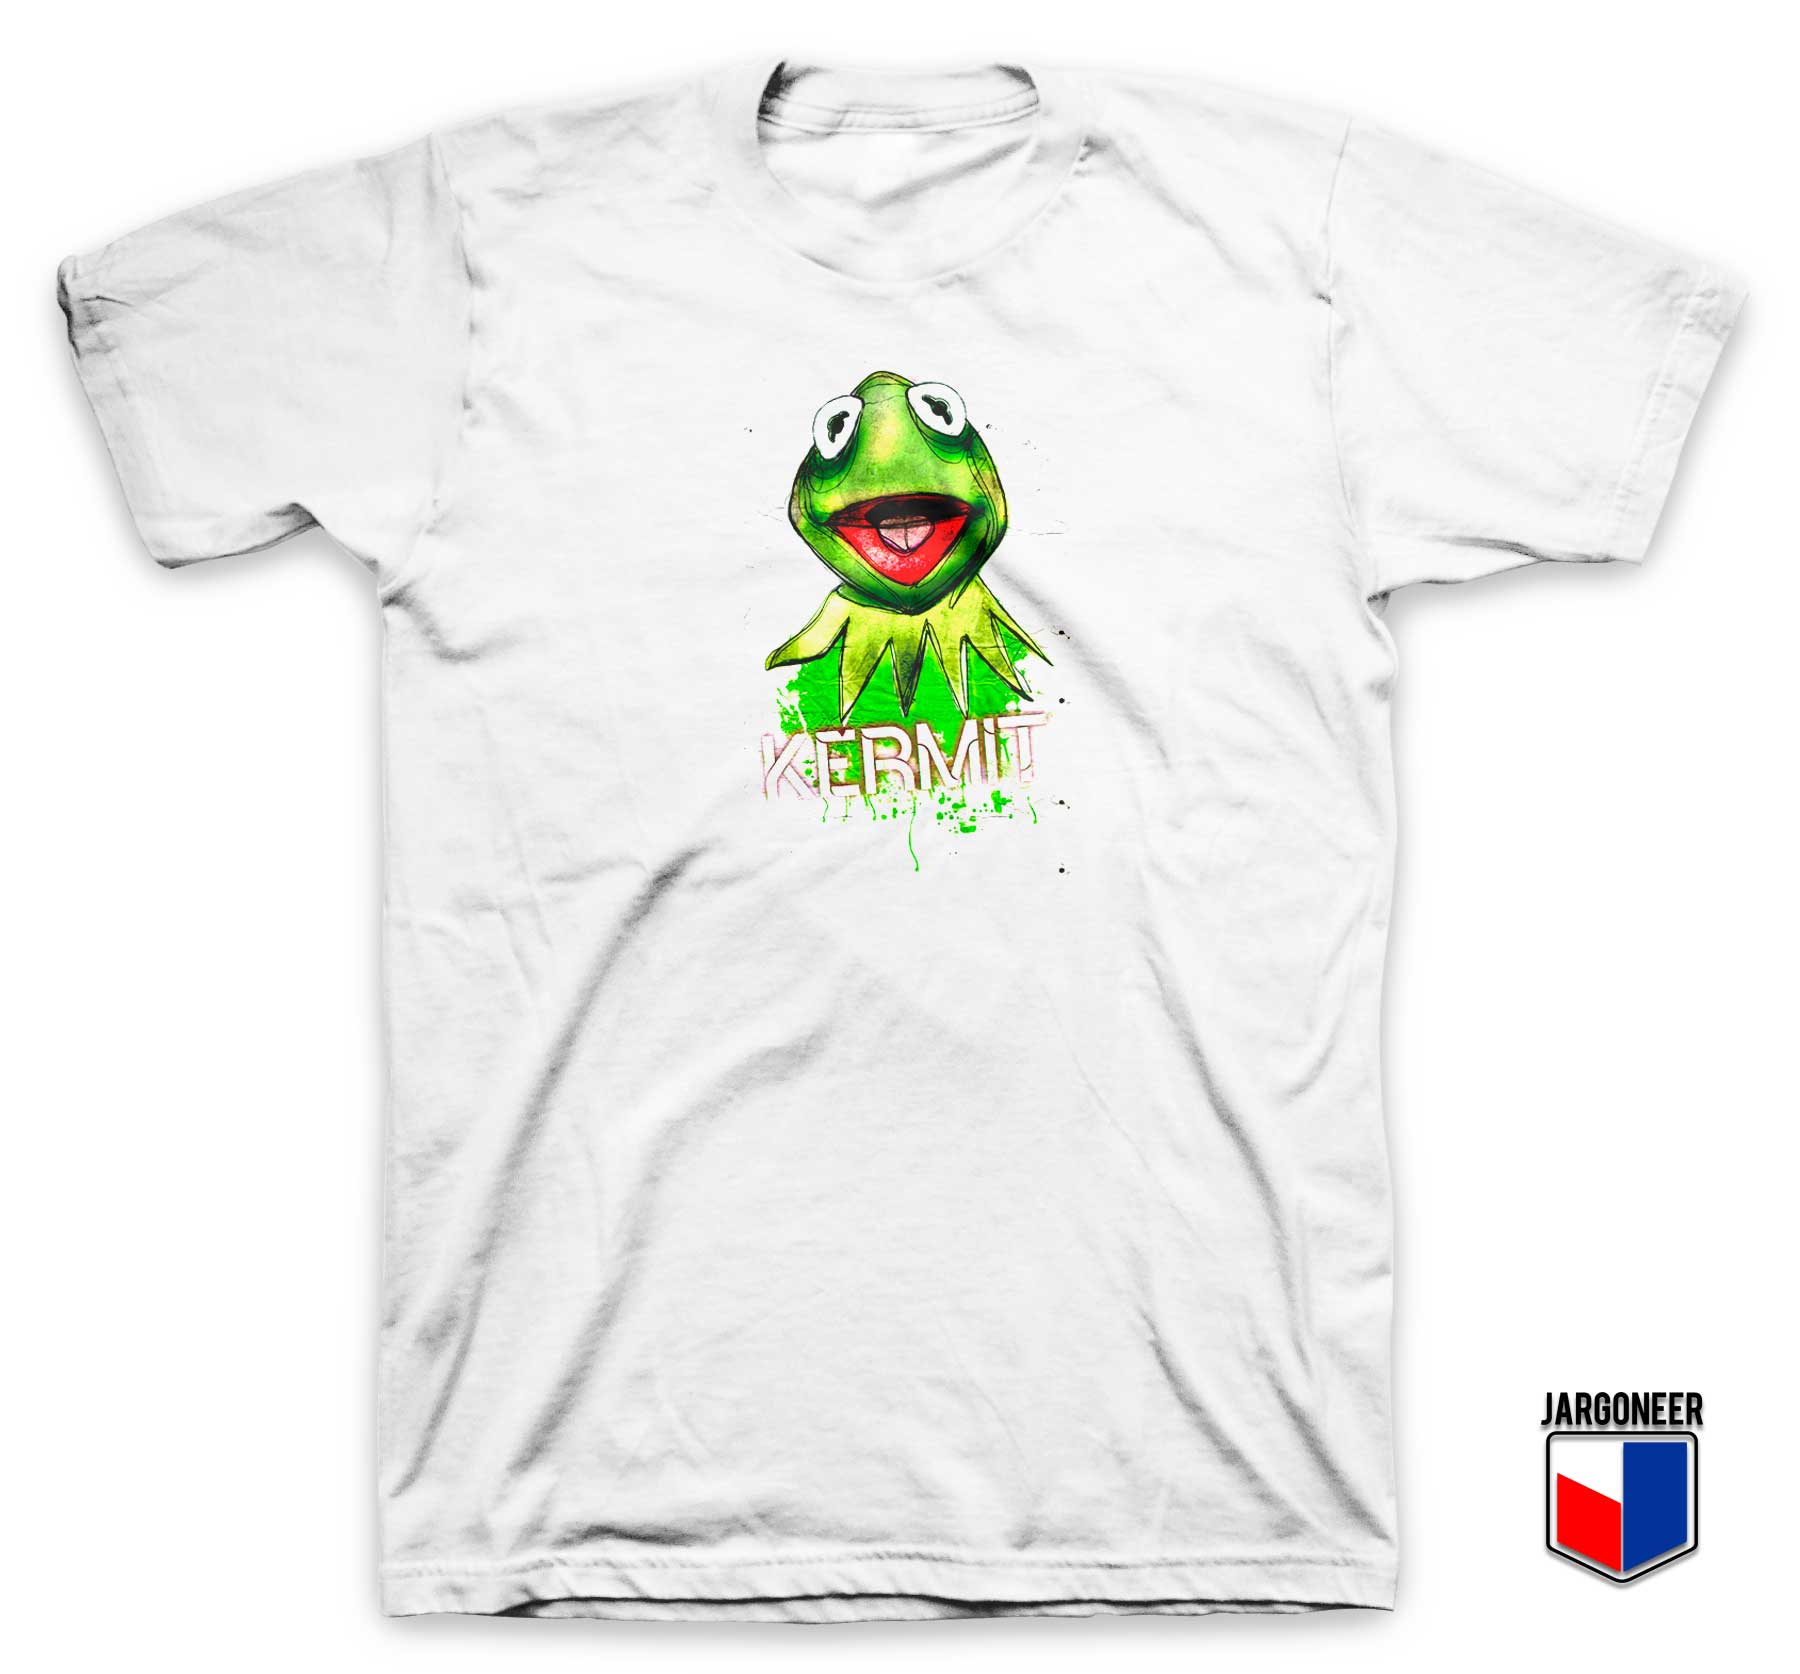 Kermit The Frog T Shirt - Shop Unique Graphic Cool Shirt Designs